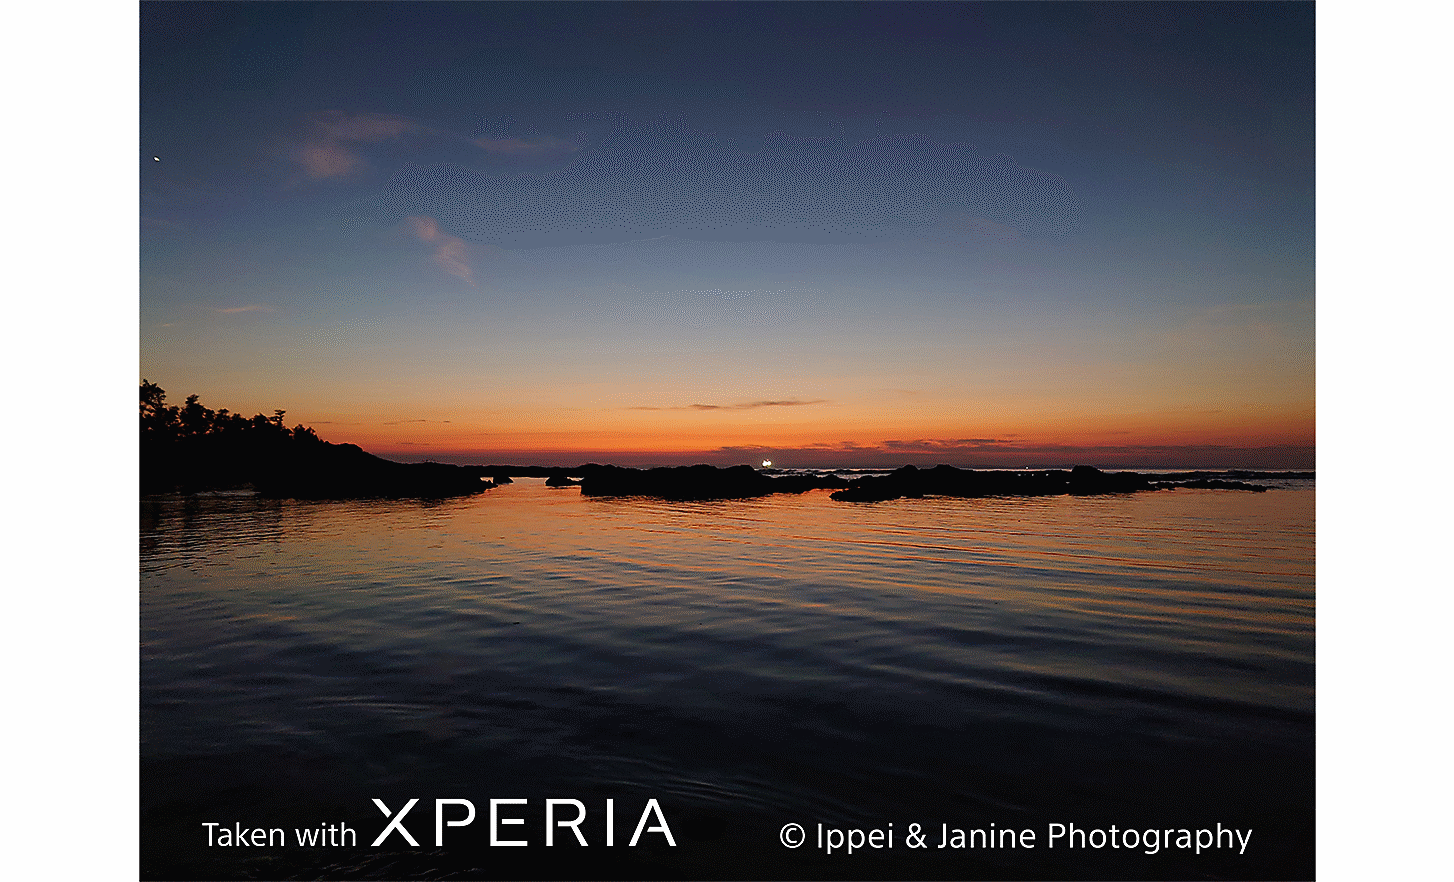 大片水面上的日落景色。寫著「使用 Xperia 拍攝 ©Ippei & Janine Photography」的文字。